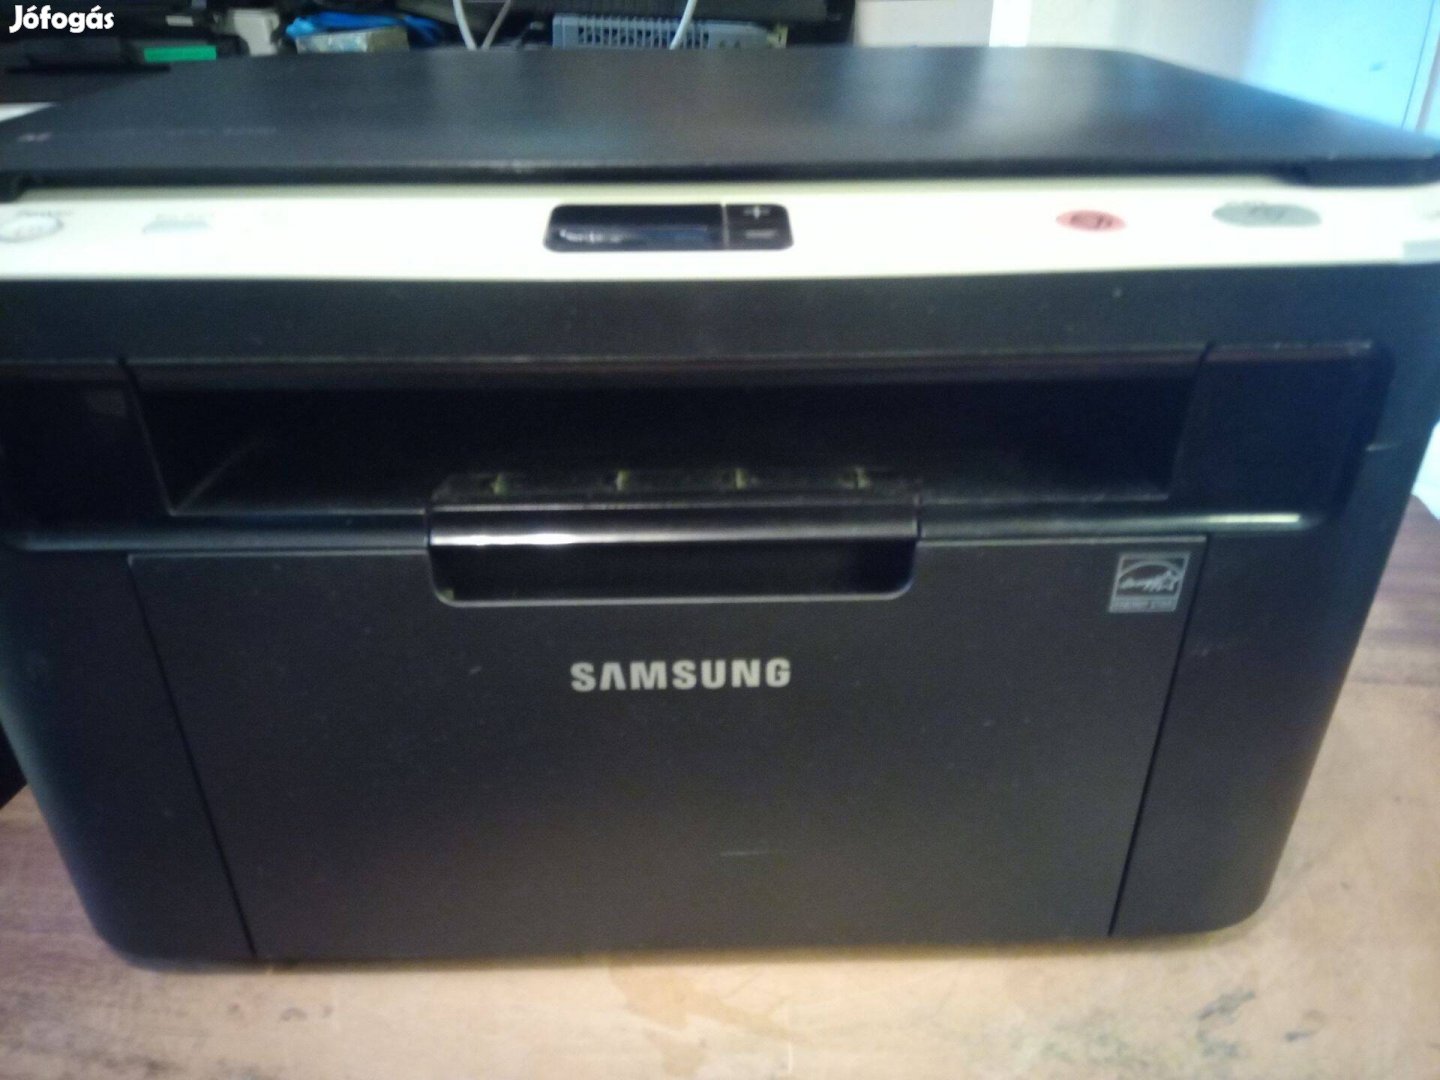 Samsung Scx-3200 fekete - fehér lézer nyomtató - másoló - szkenner